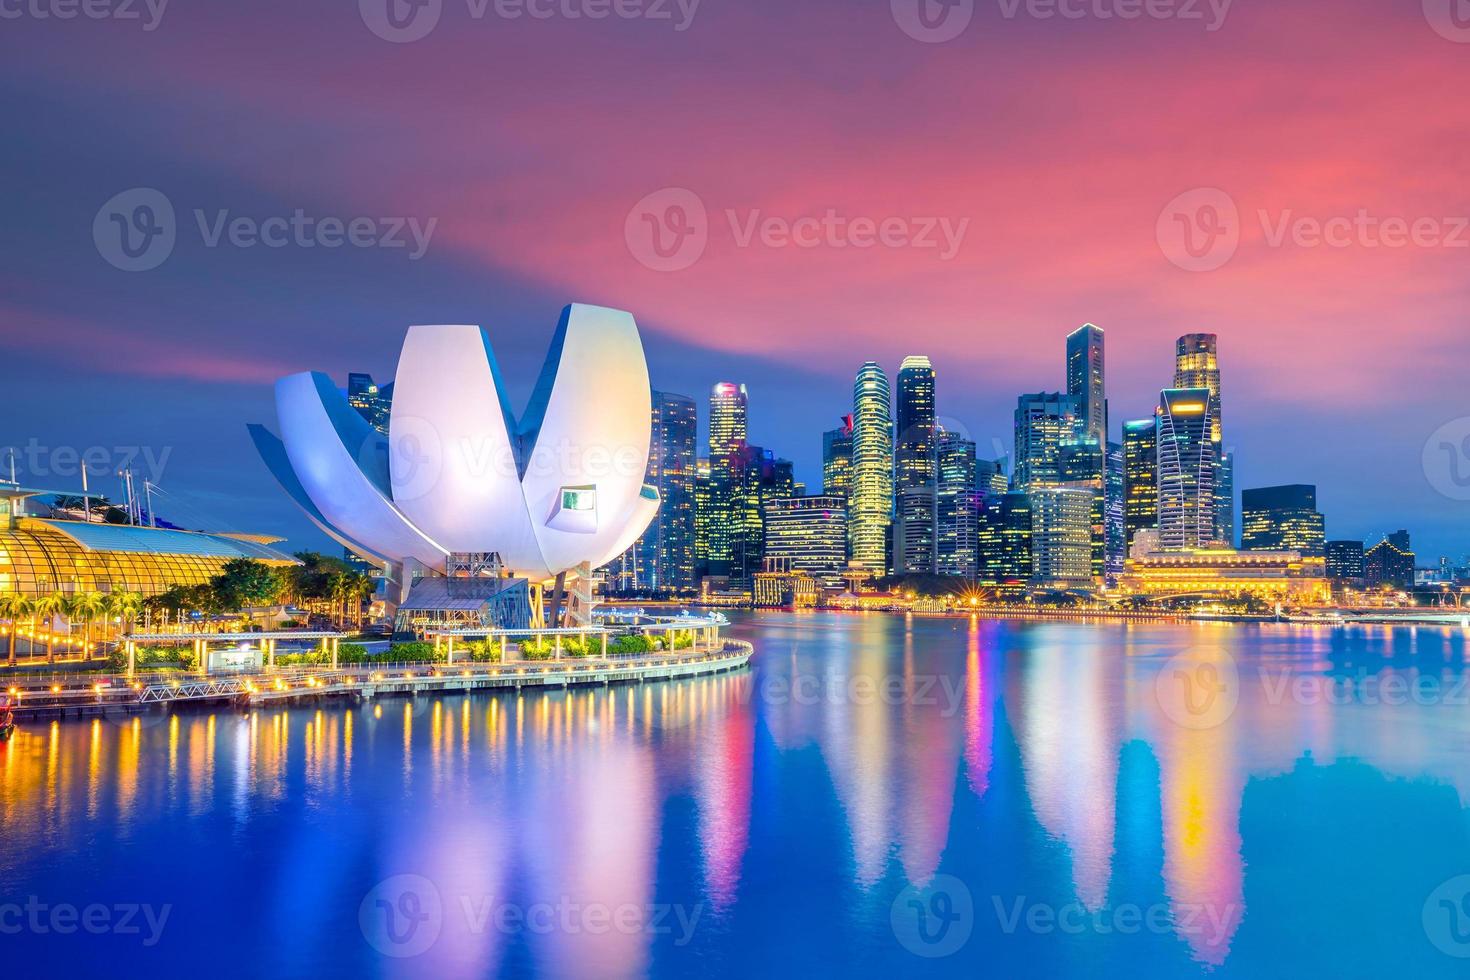 skyline van de binnenstad van singapore foto